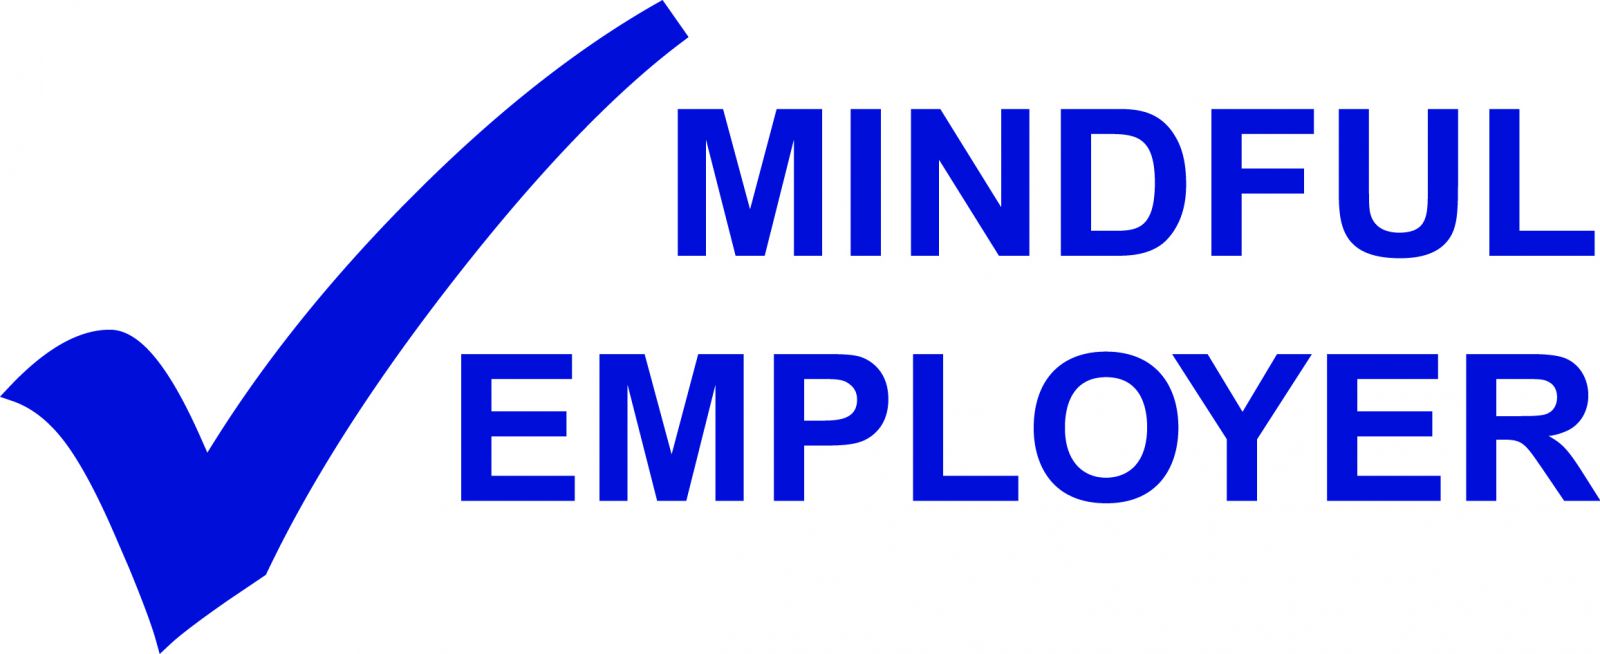 Mindful Employer logo